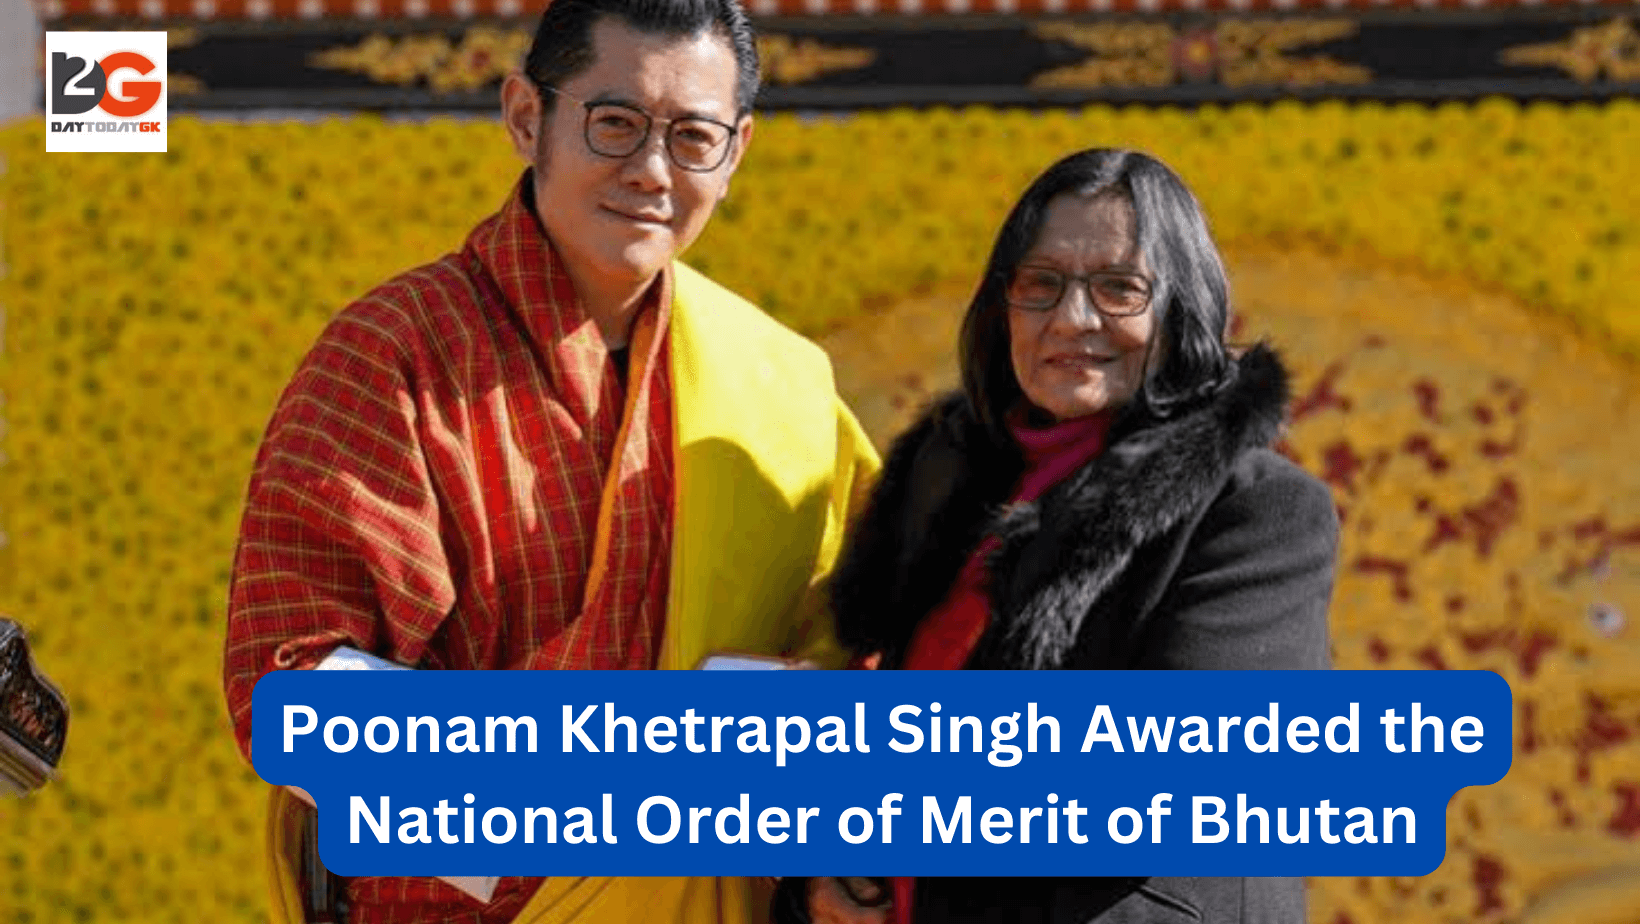 Poonam Khetrapal Singh Awarded the National Order of Merit of Bhutan